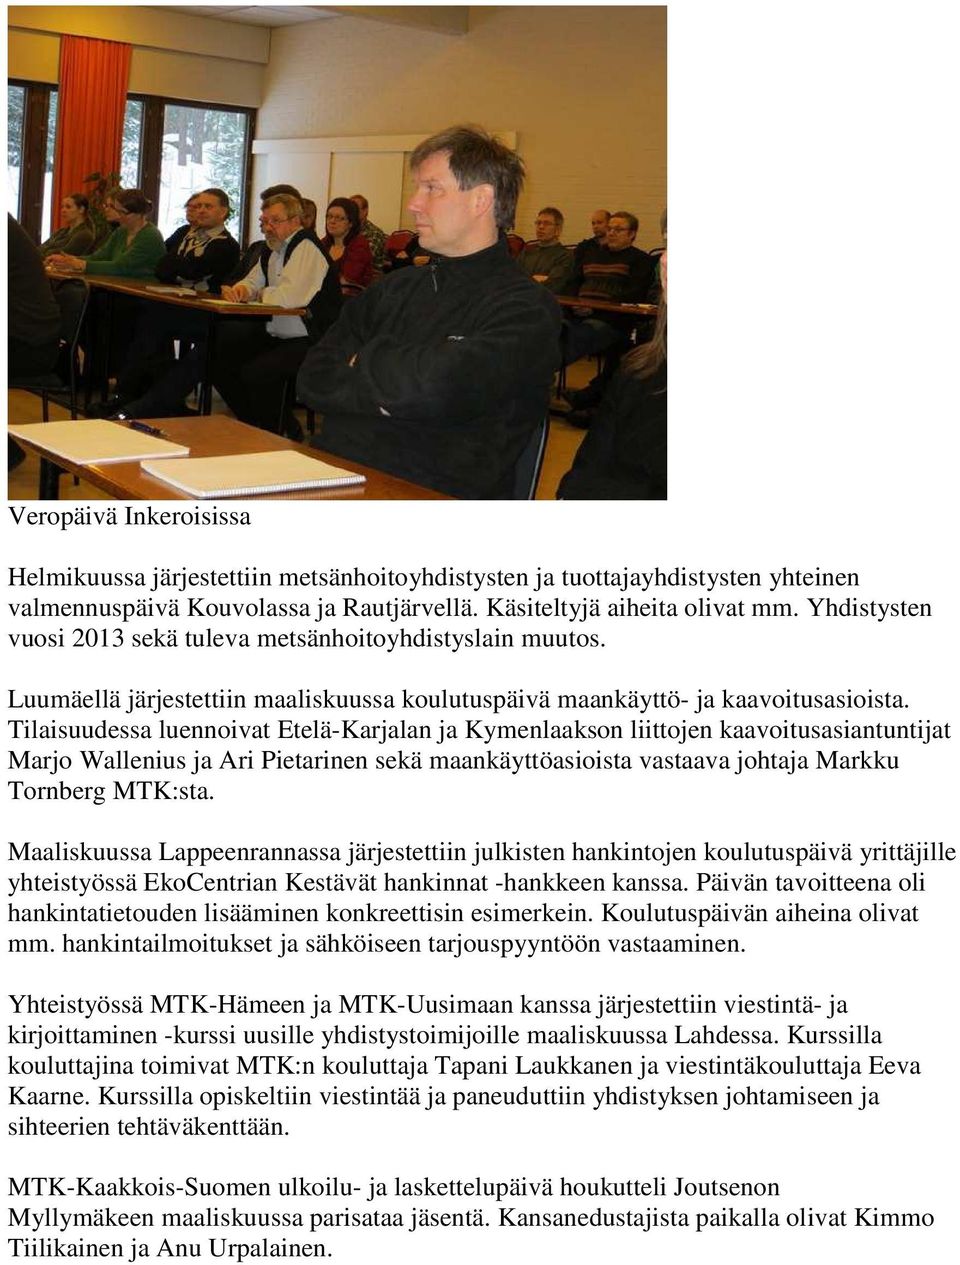 Tilaisuudessa luennoivat Etelä-Karjalan ja Kymenlaakson liittojen kaavoitusasiantuntijat Marjo Wallenius ja Ari Pietarinen sekä maankäyttöasioista vastaava johtaja Markku Tornberg MTK:sta.